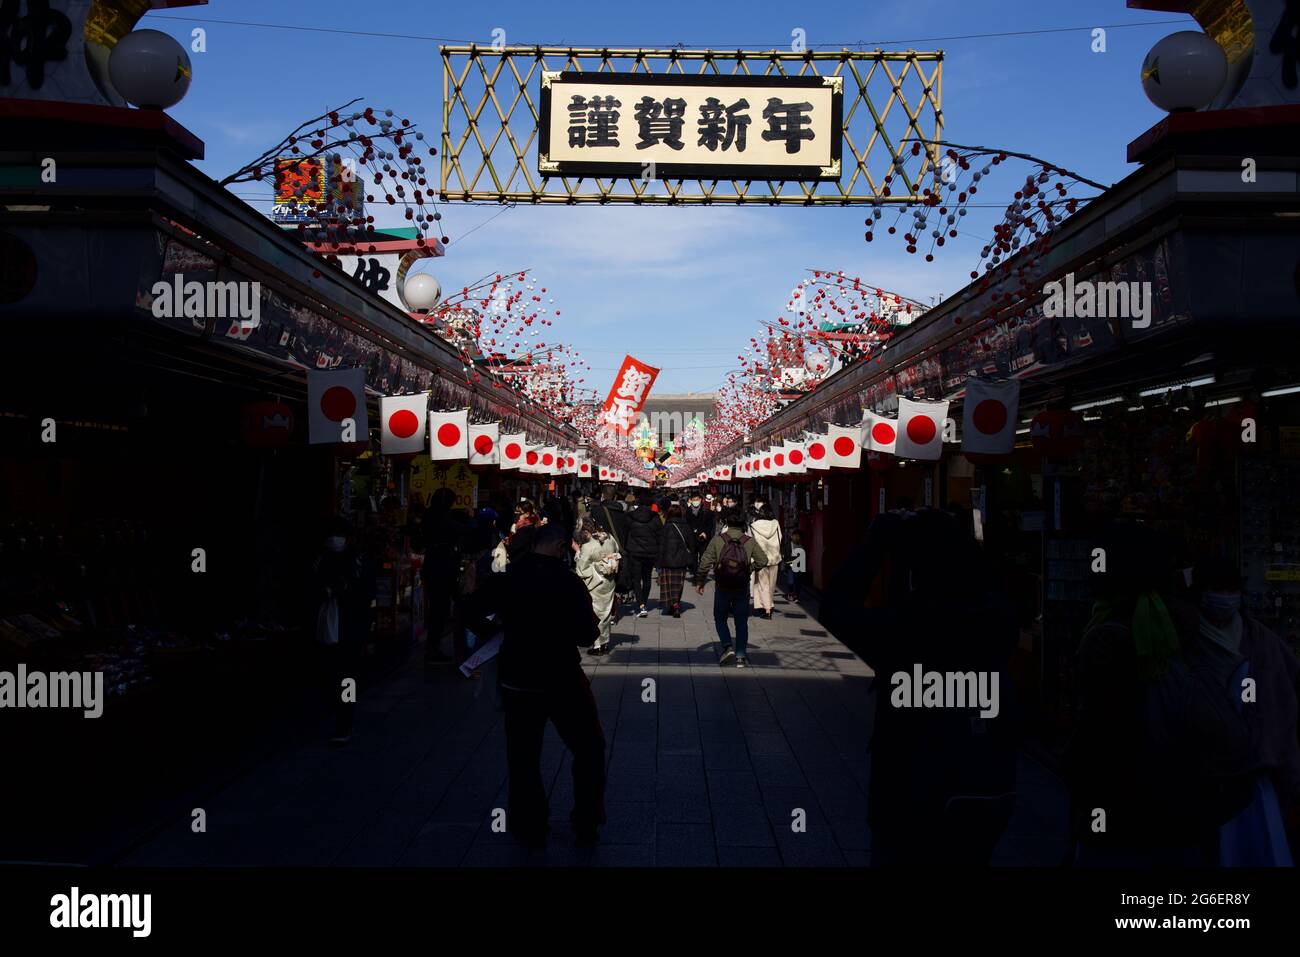 La rue nakamise dori du temple Sensoji se bloque pendant les vacances du nouvel an au Japon, Asakusa, Tokyo, Japon Banque D'Images